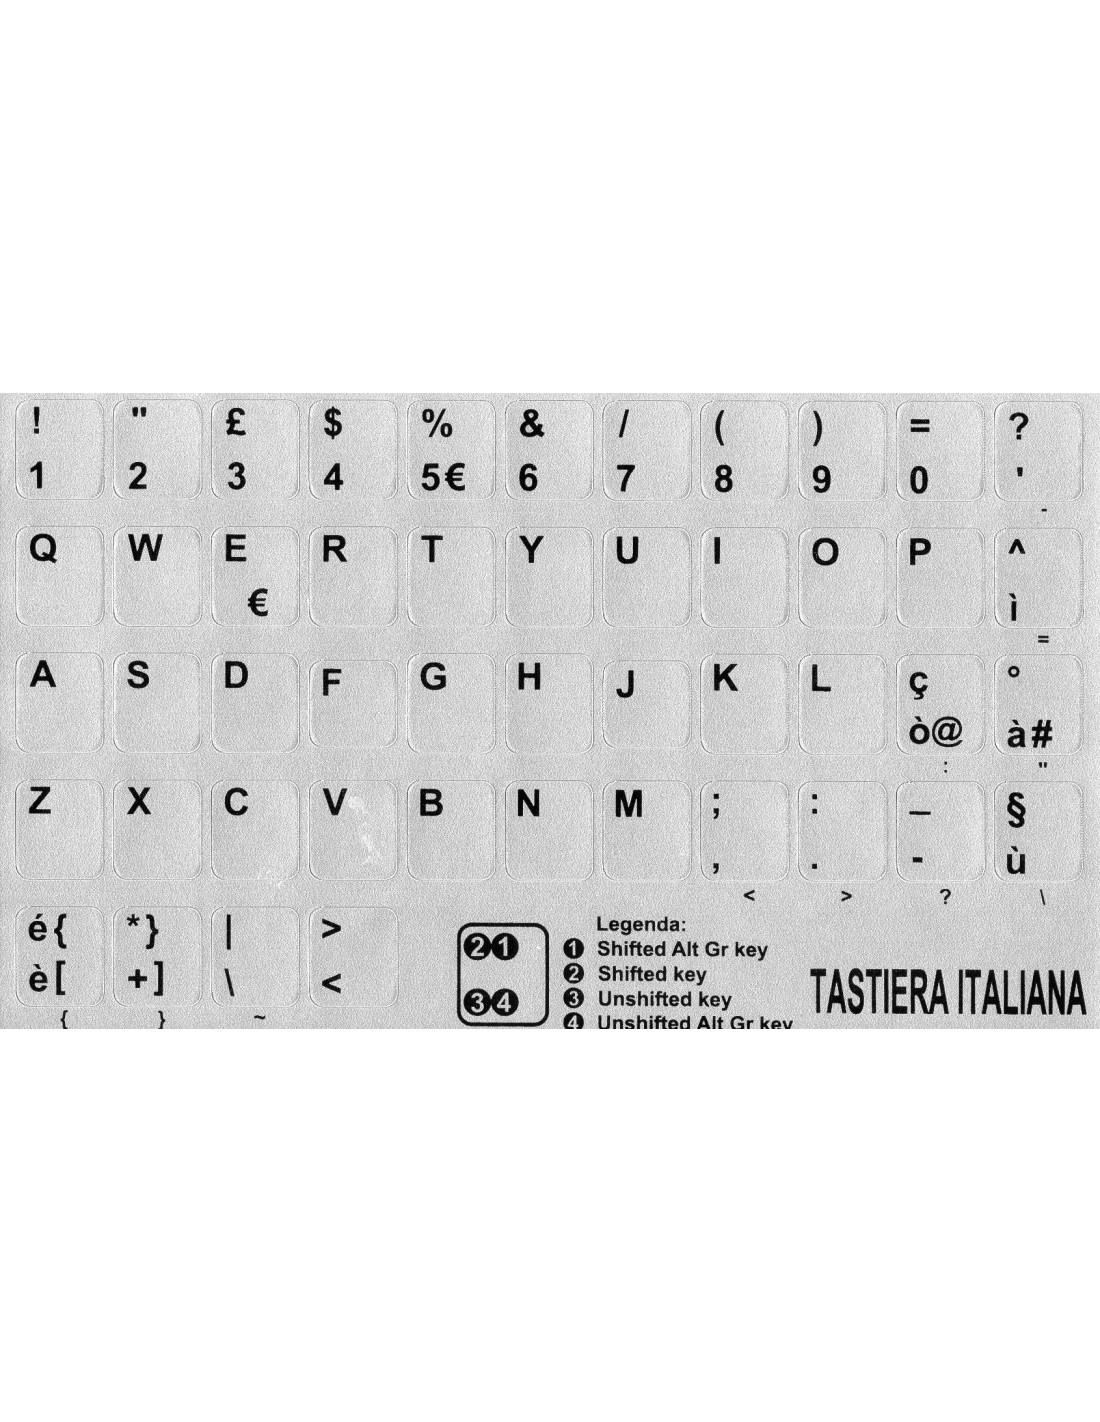 Adesivi etichette tastiera grandi Italiano fondo nero lettere bianche  ipovisione miopia